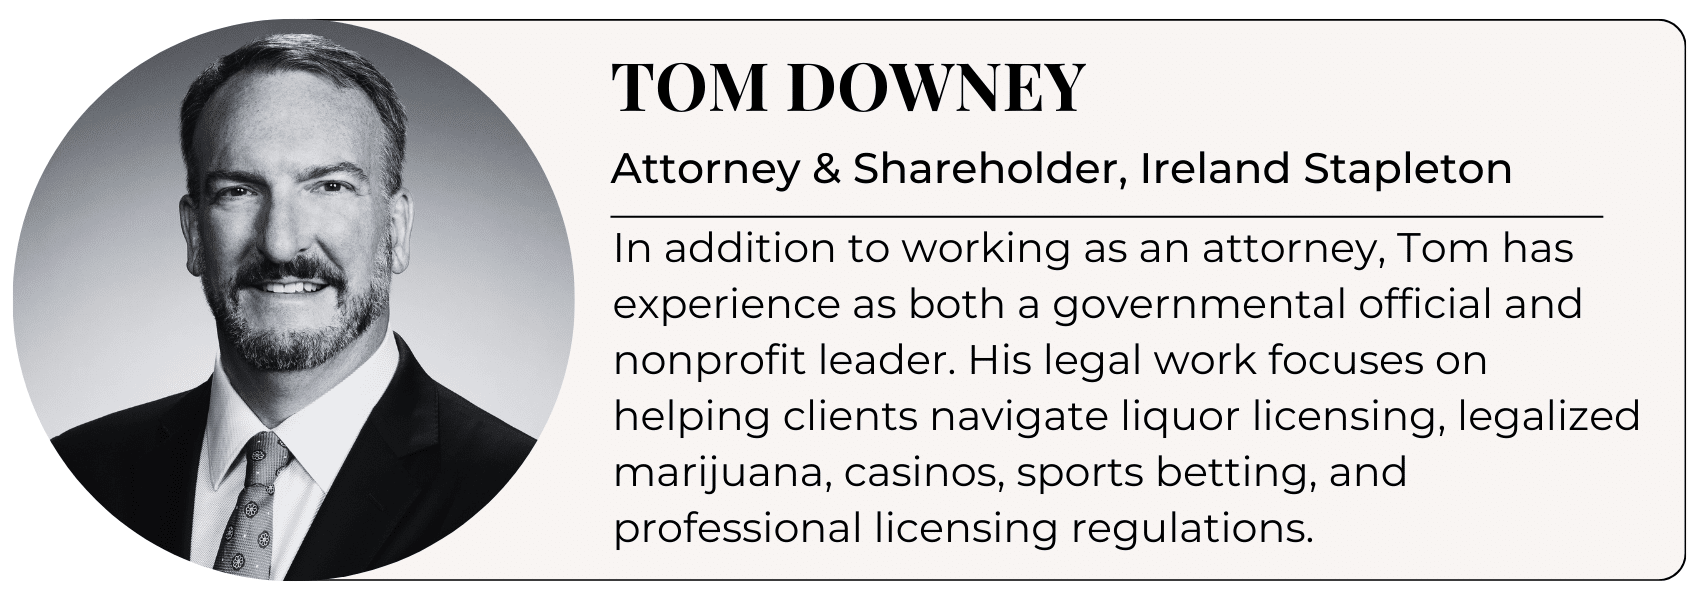 Tom Downey